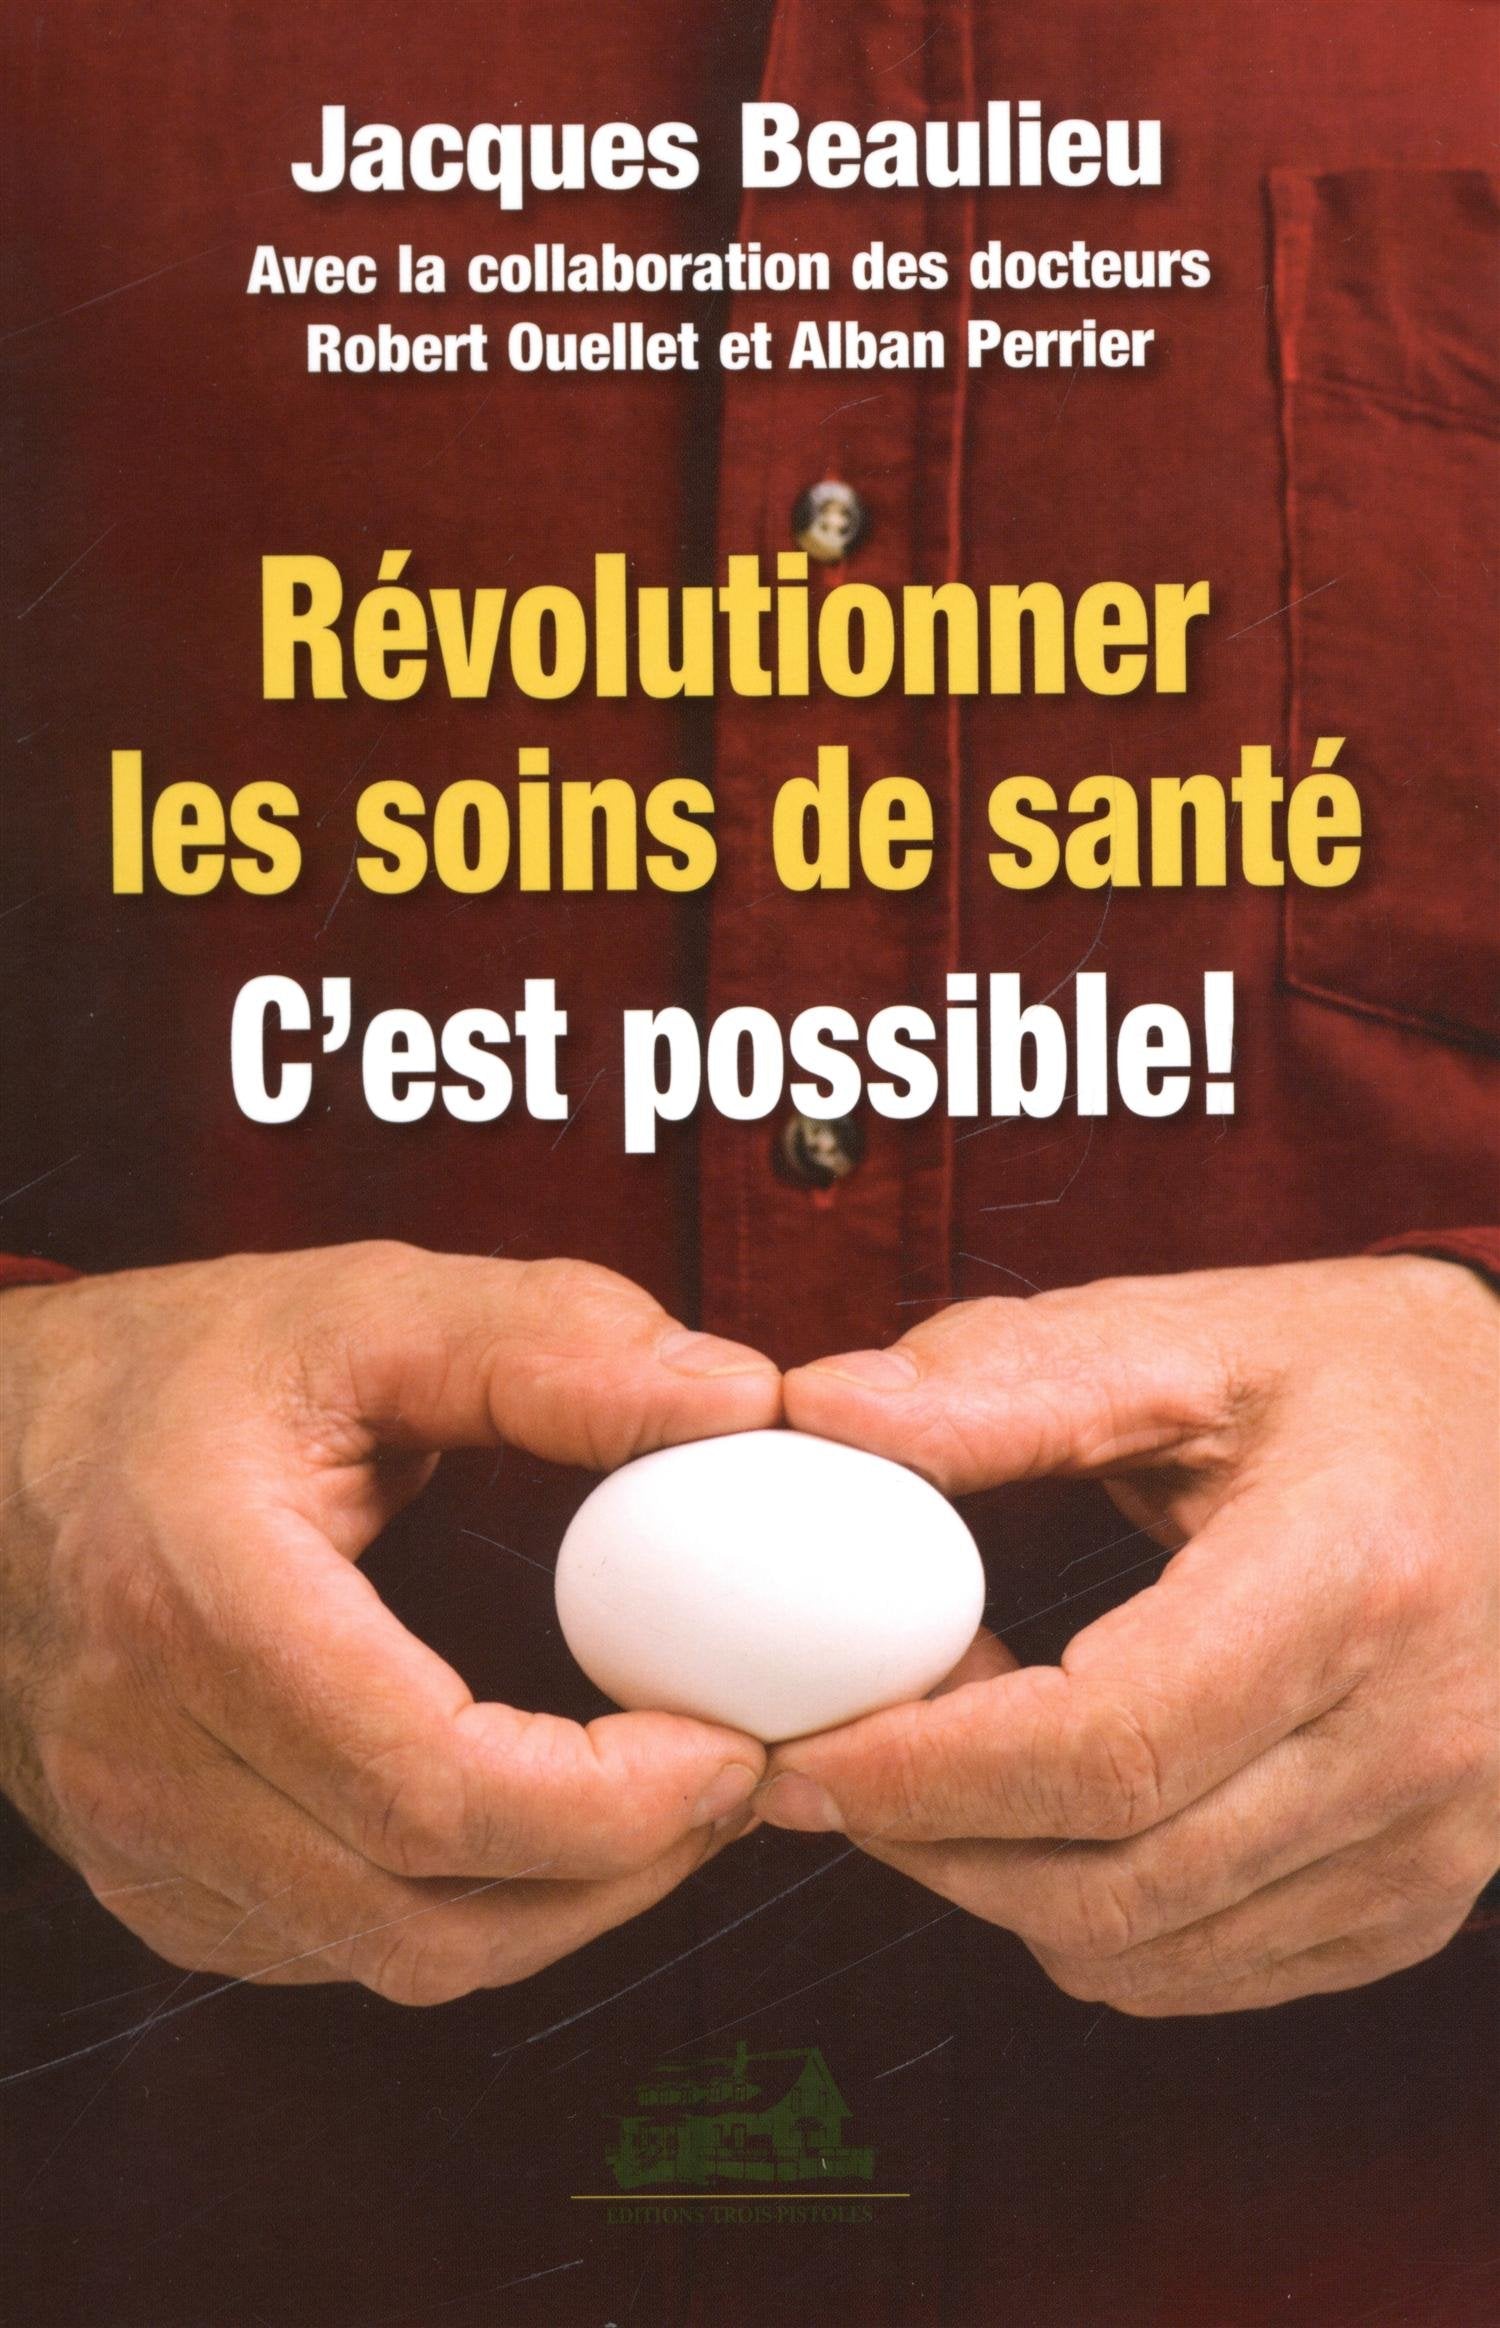 Livre ISBN 2895832587 Révolutionner les soins de santé : c'est possible! (Jacques Beaulieu)